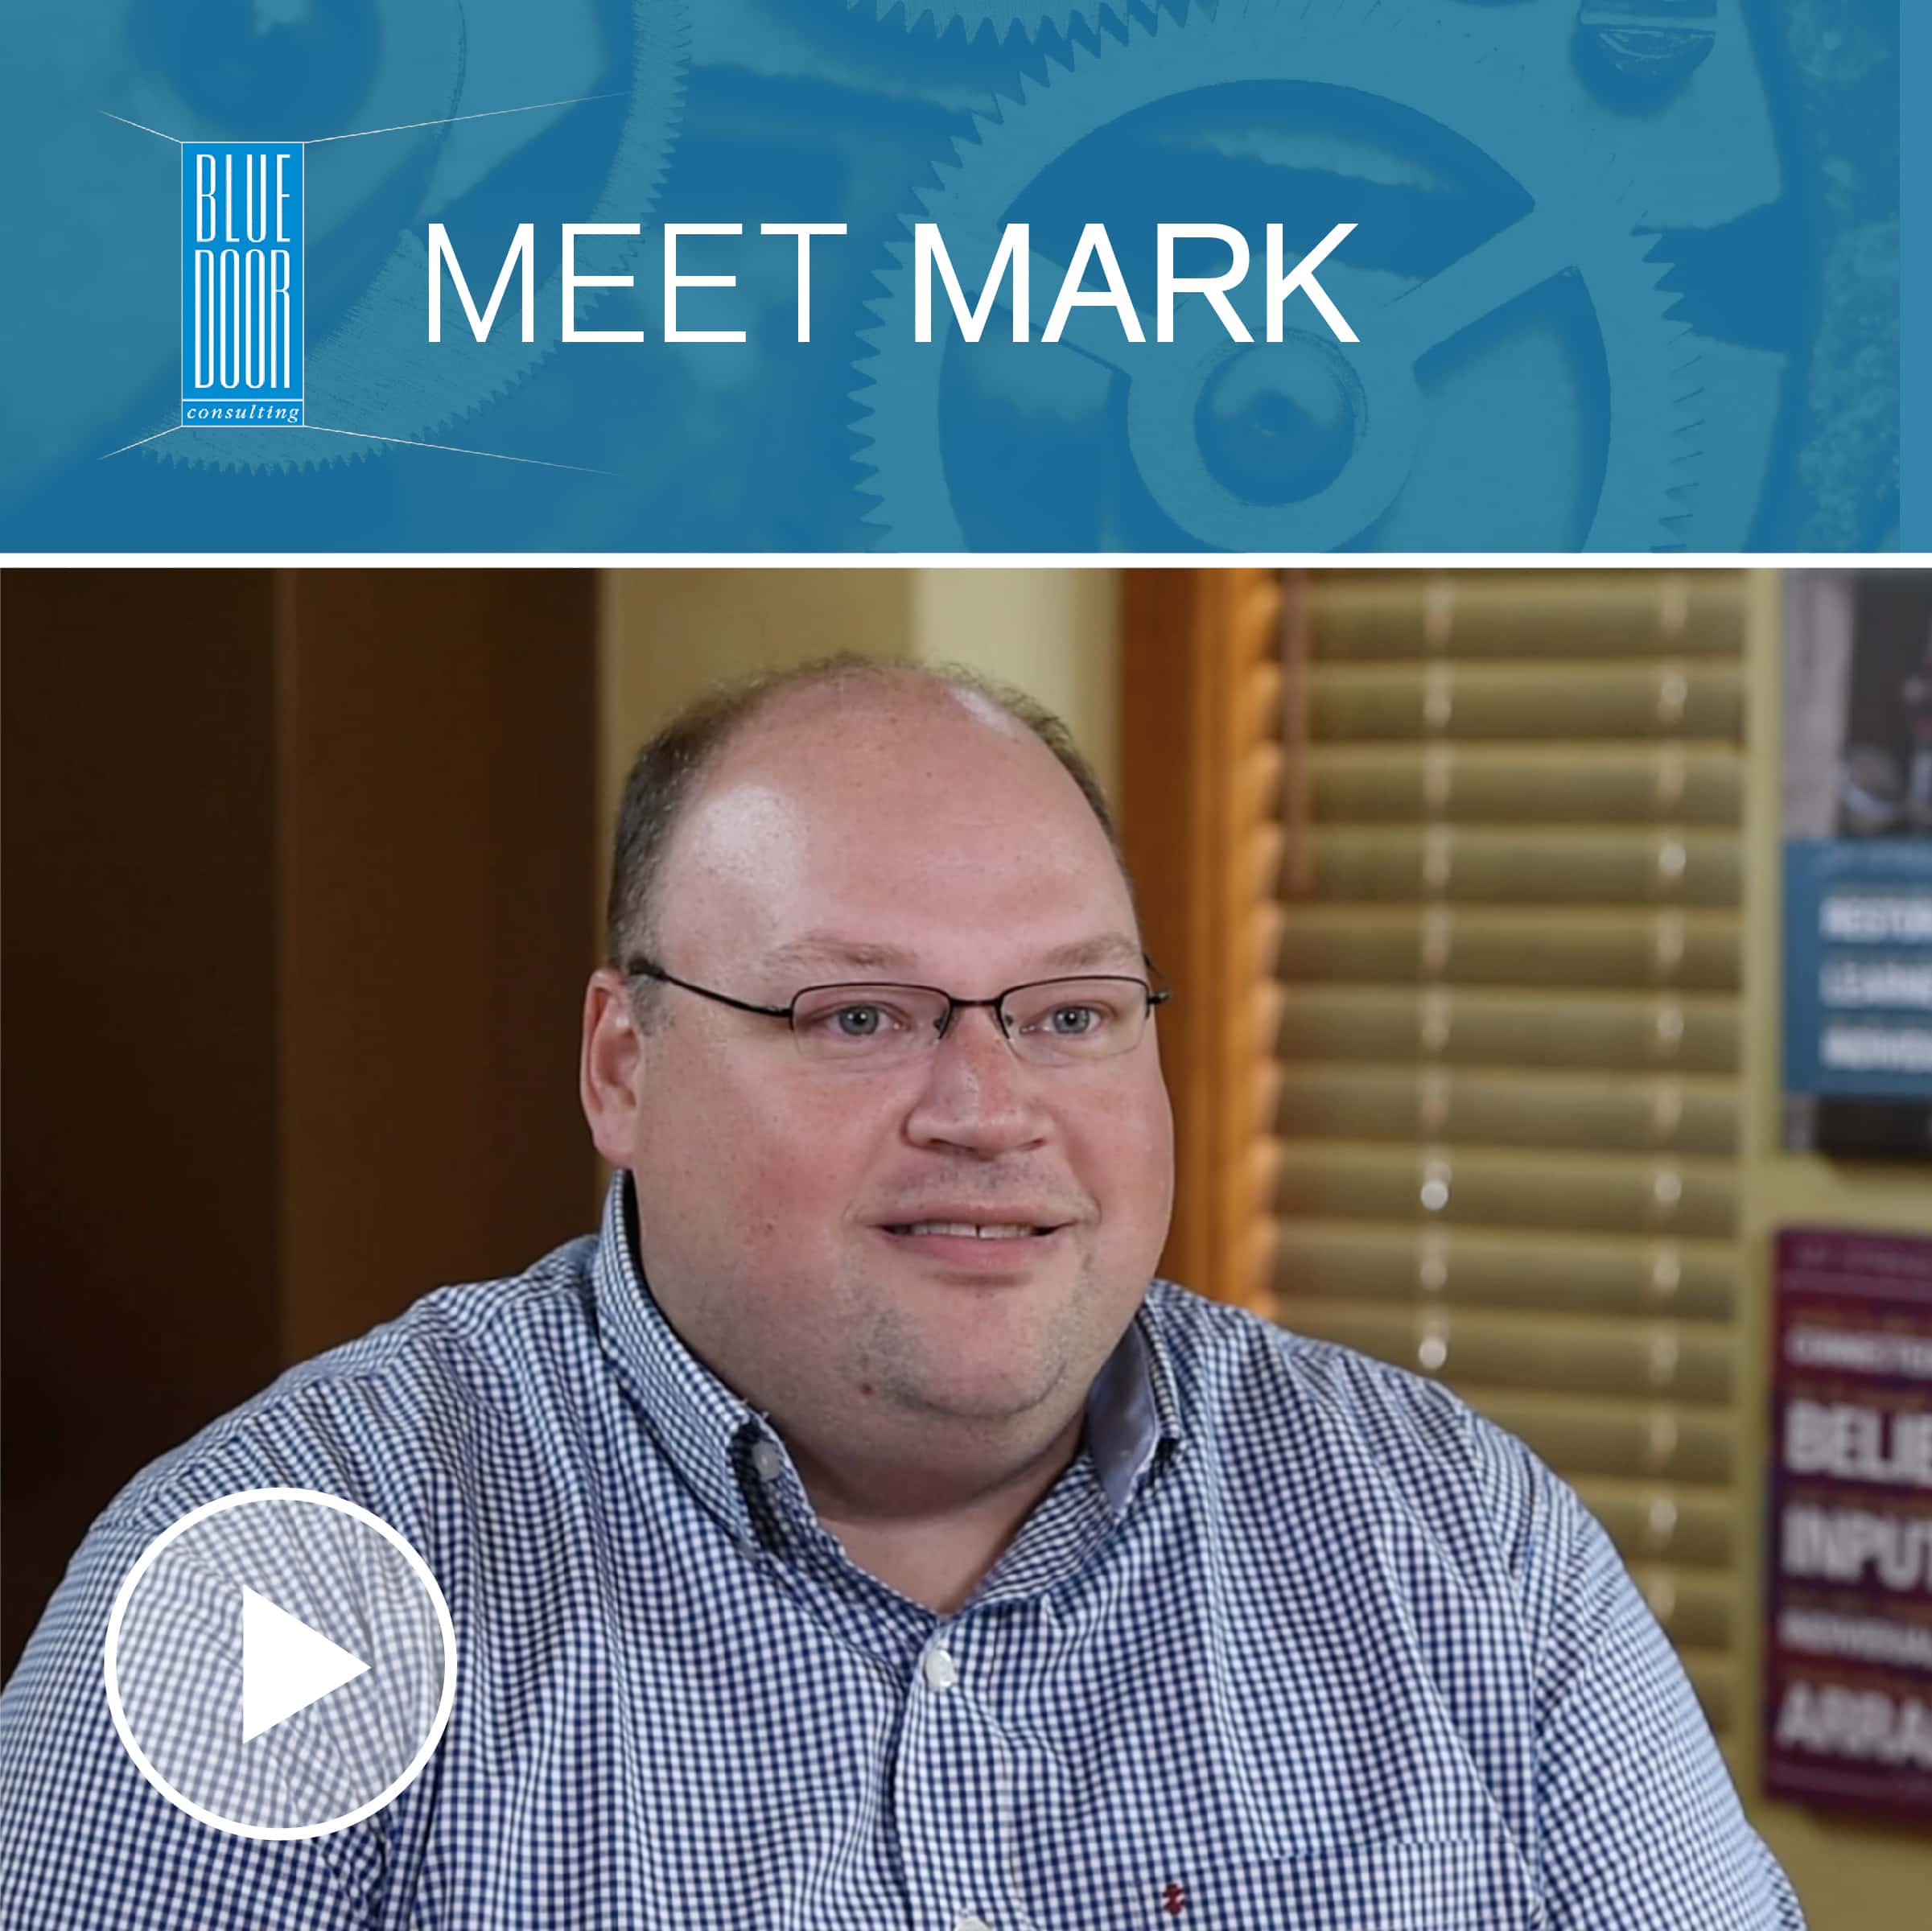 Meet Mark